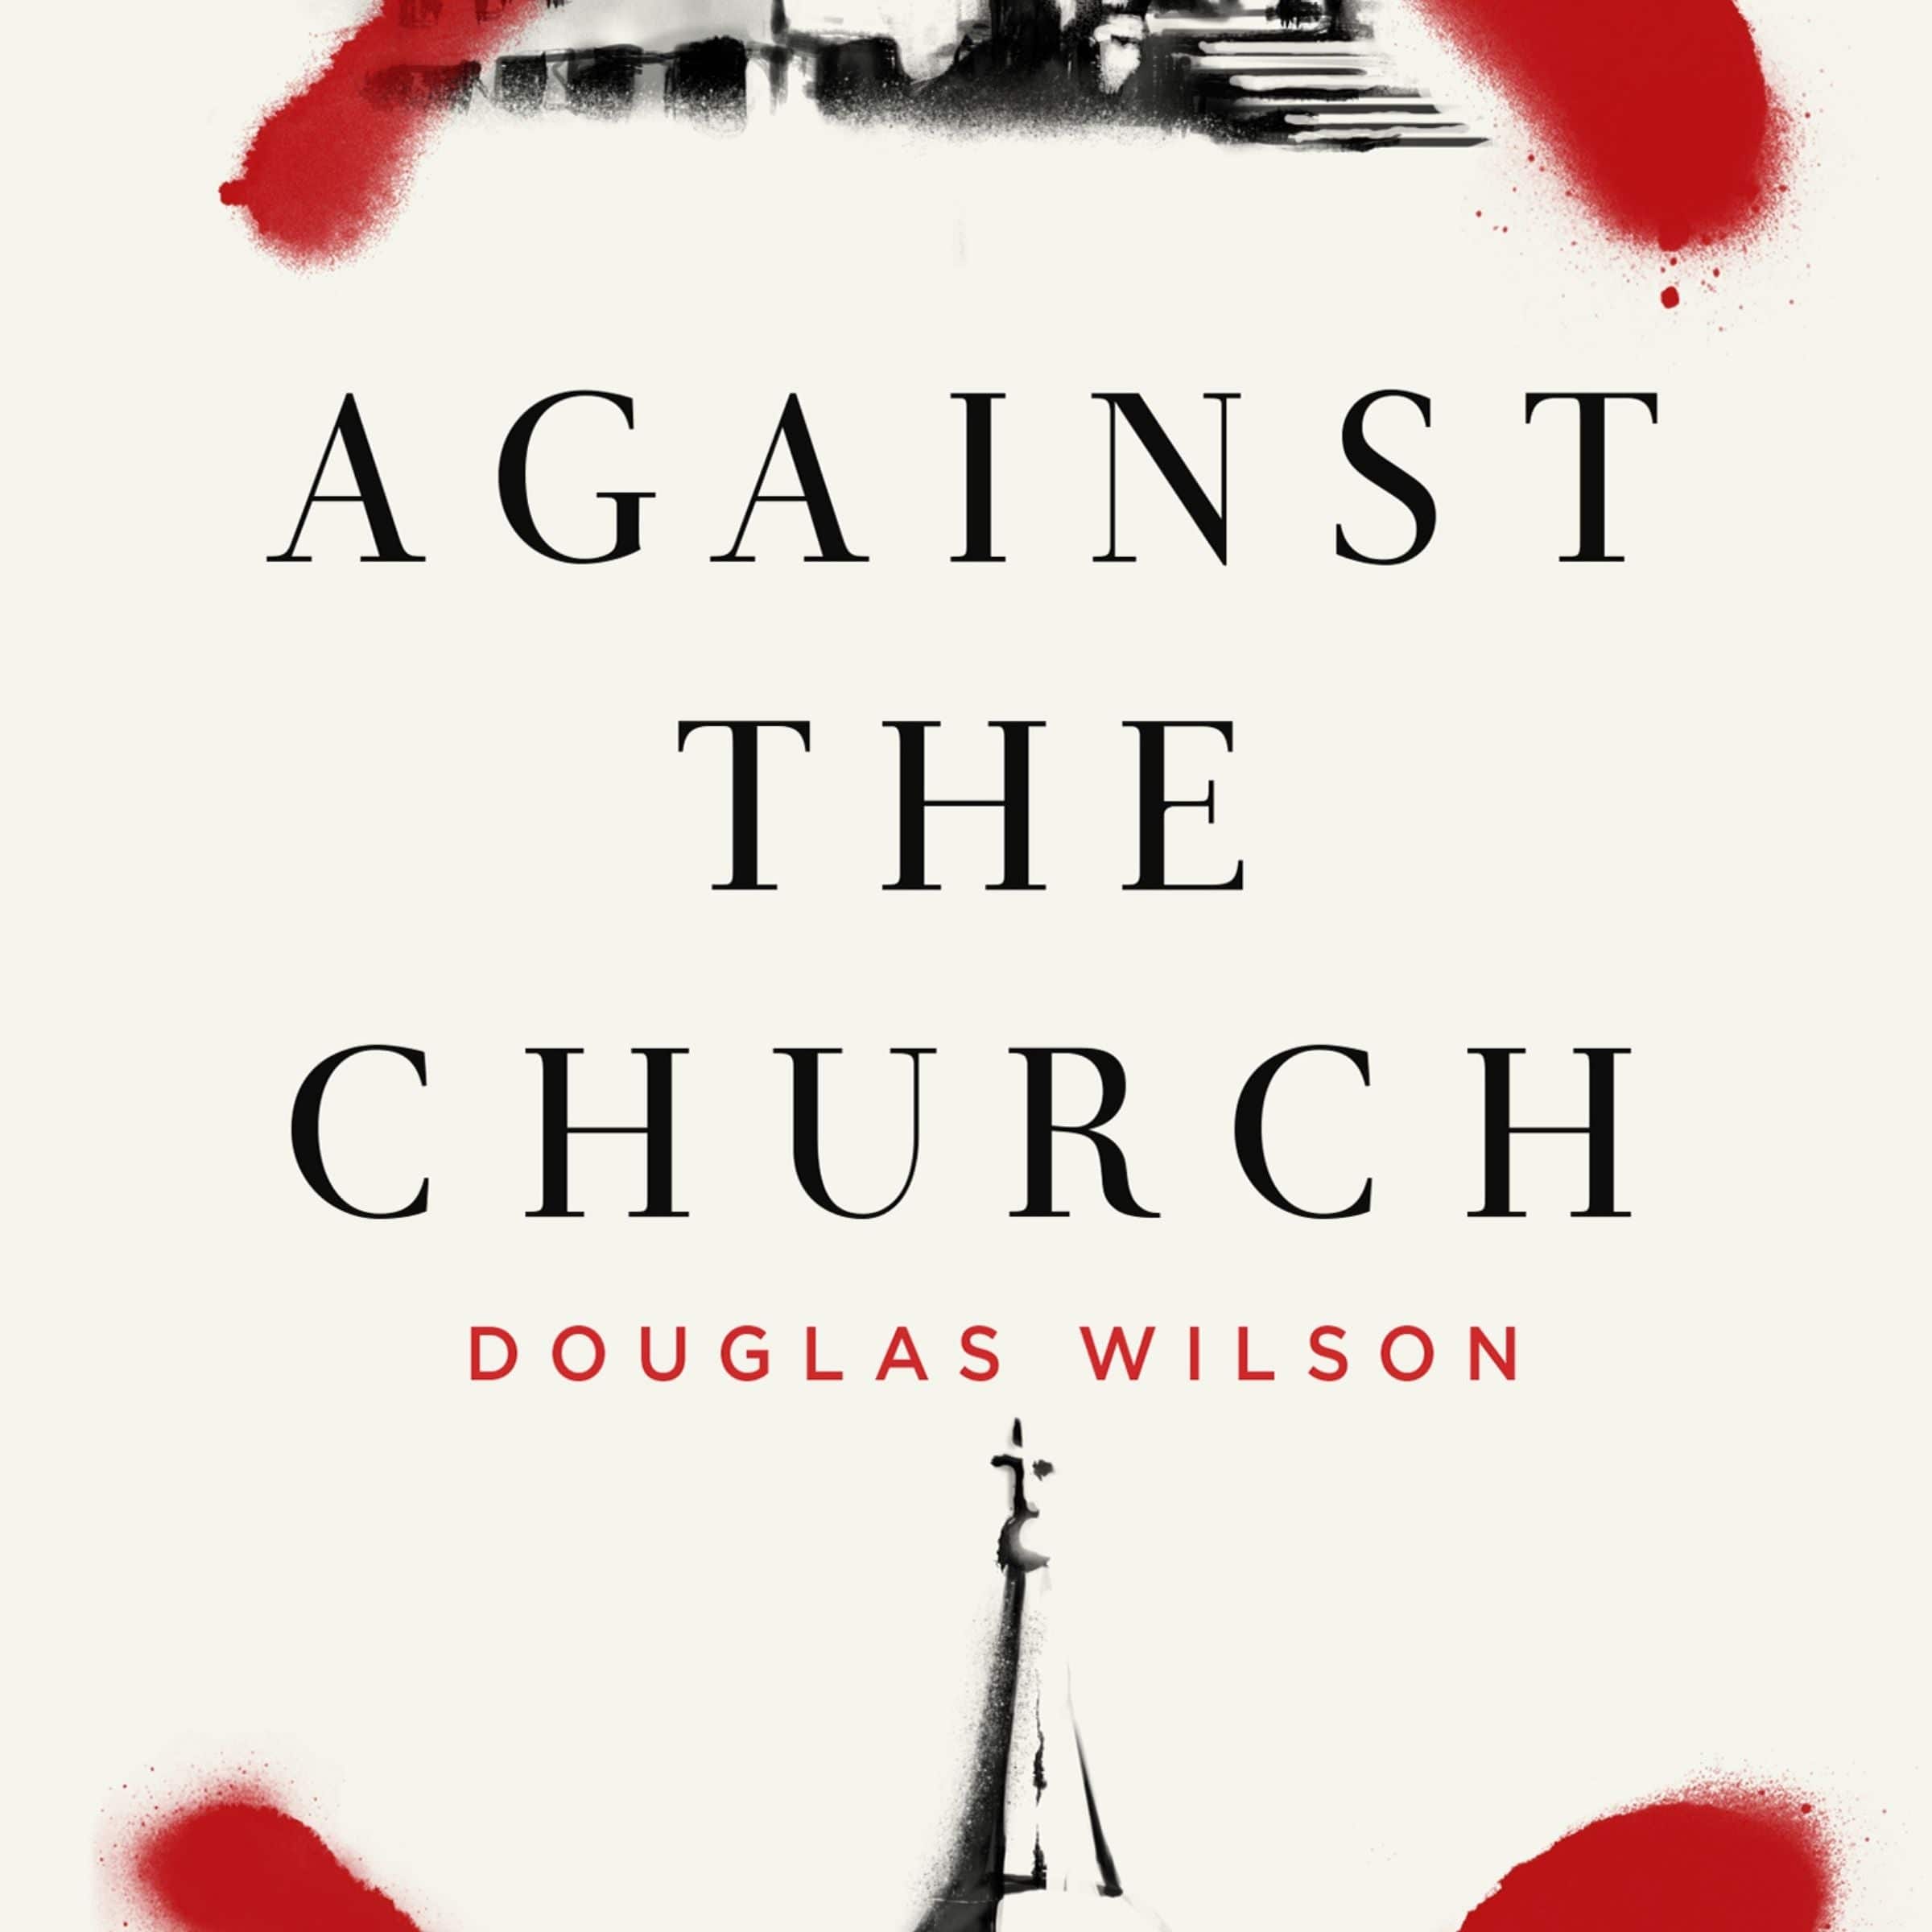 Against the Church